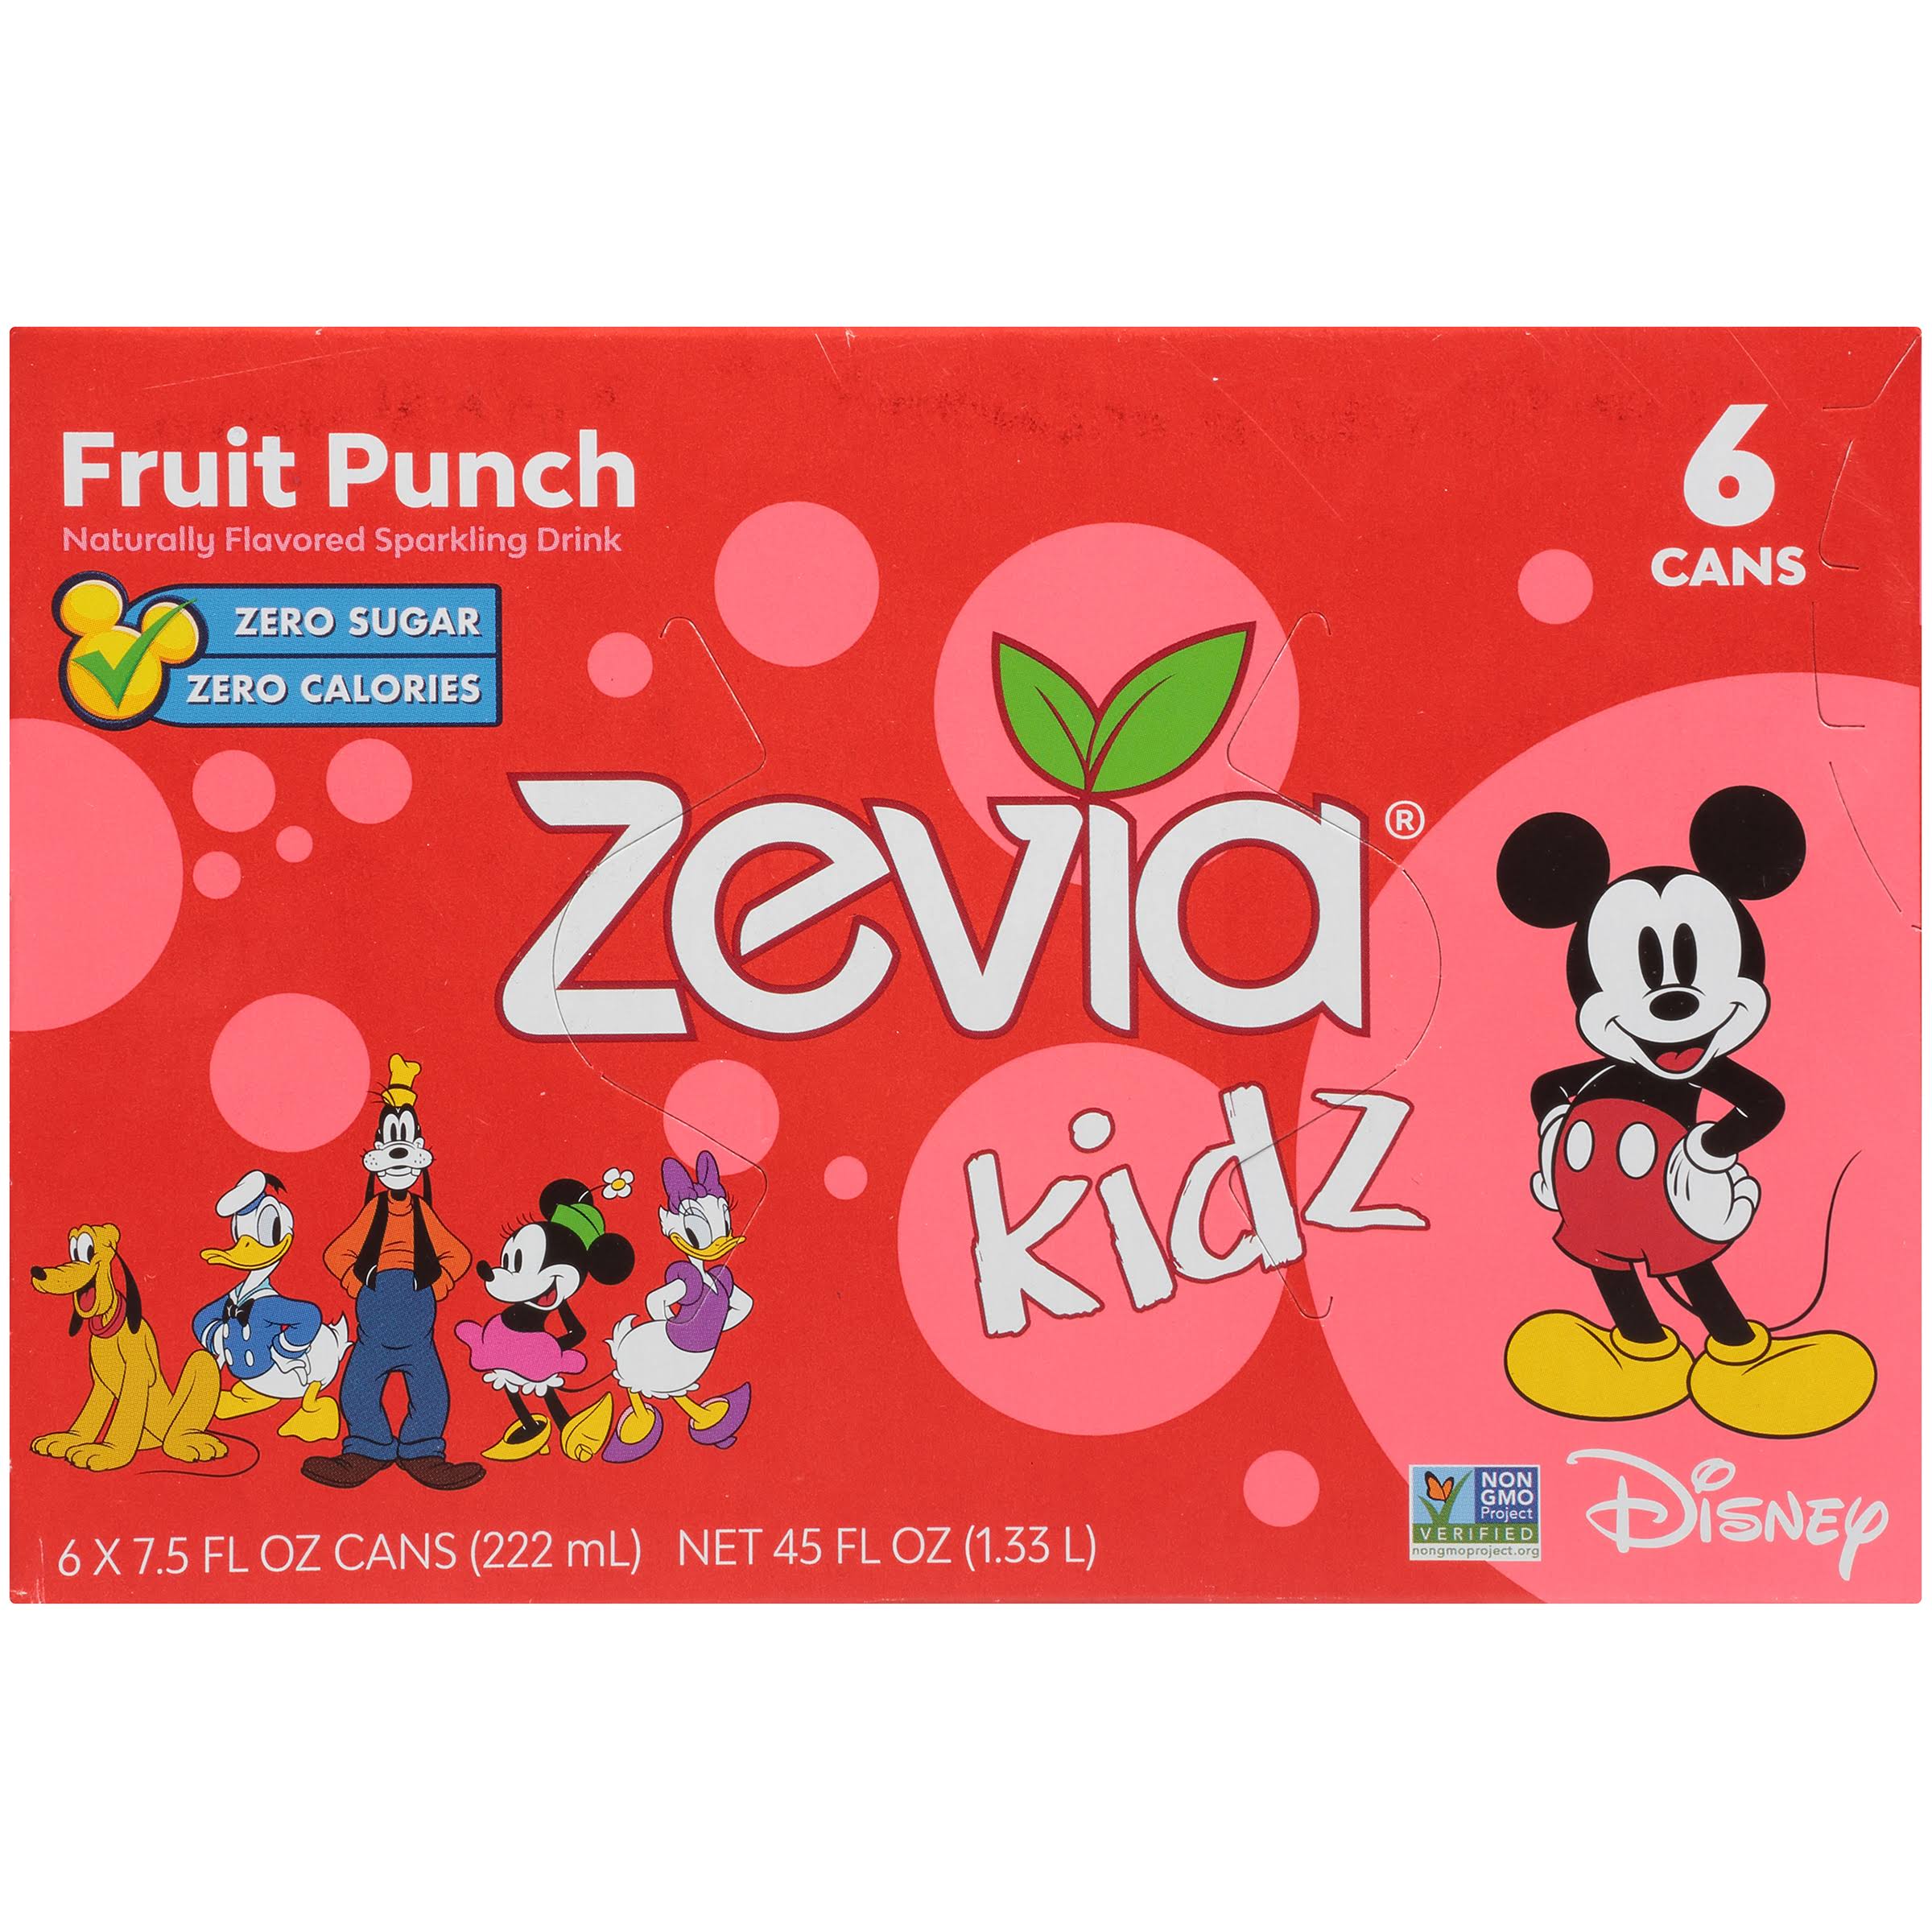 Zevia Kidz Sparkling Drink, Fruit Punch - 6 pack, 7.5 fl oz cans